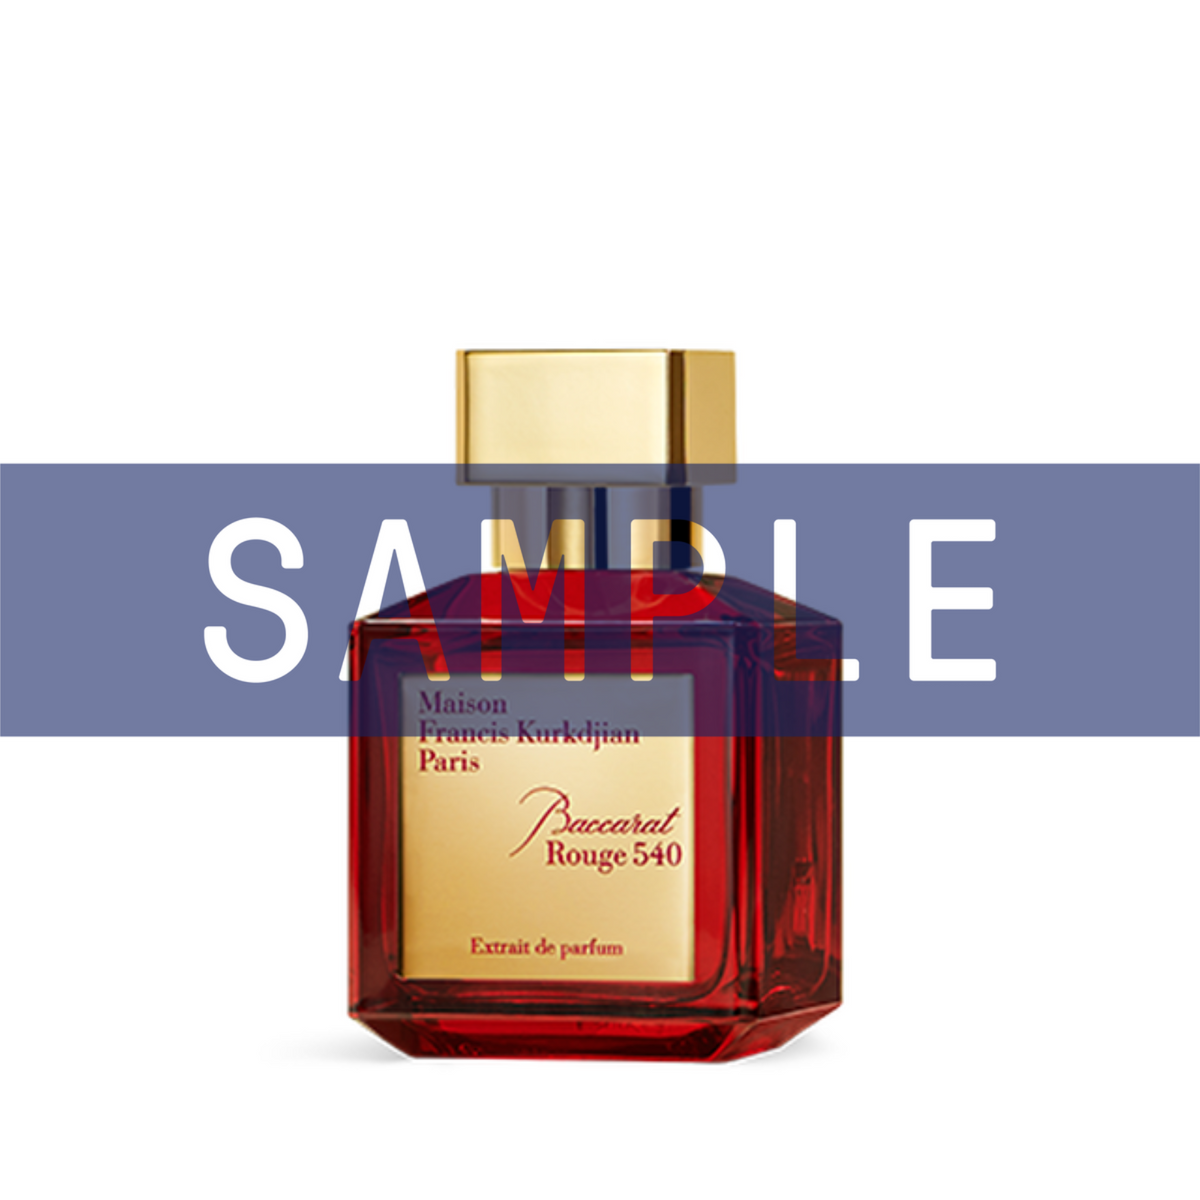 Maison Francis Kurkdjian Baccarat Rouge 540 Extrait De Parfum 